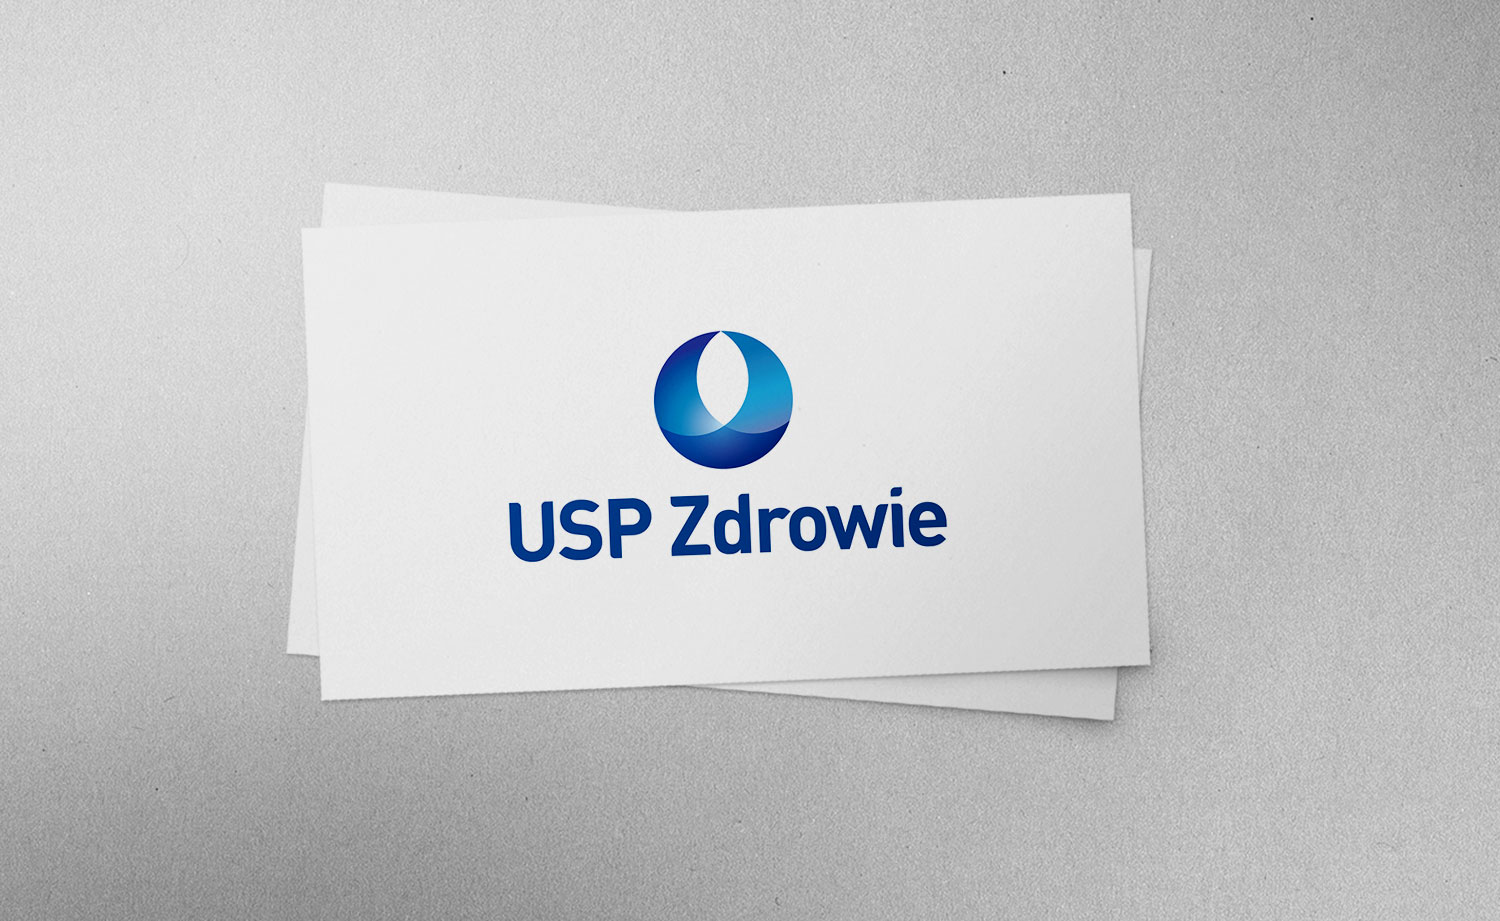 USP Zdrowie starts cooperation with Biuro Podróży Reklamy